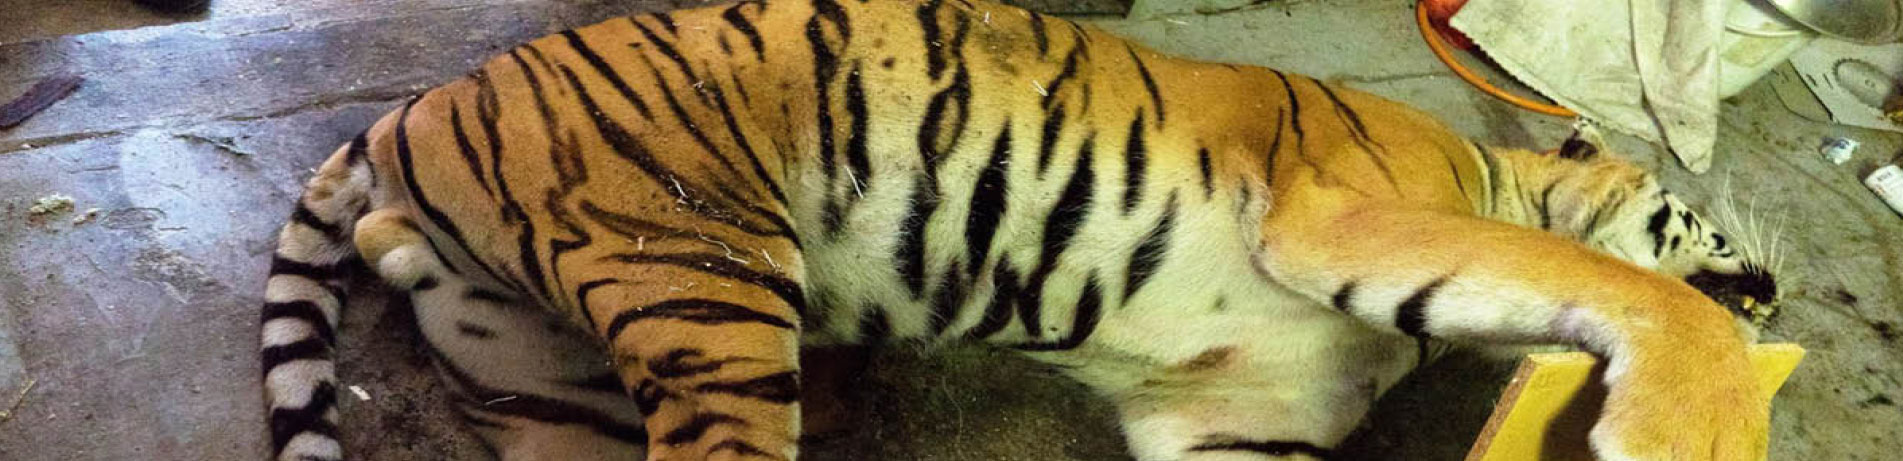 Dead tiger in a slaughterhouse, Czech Republic